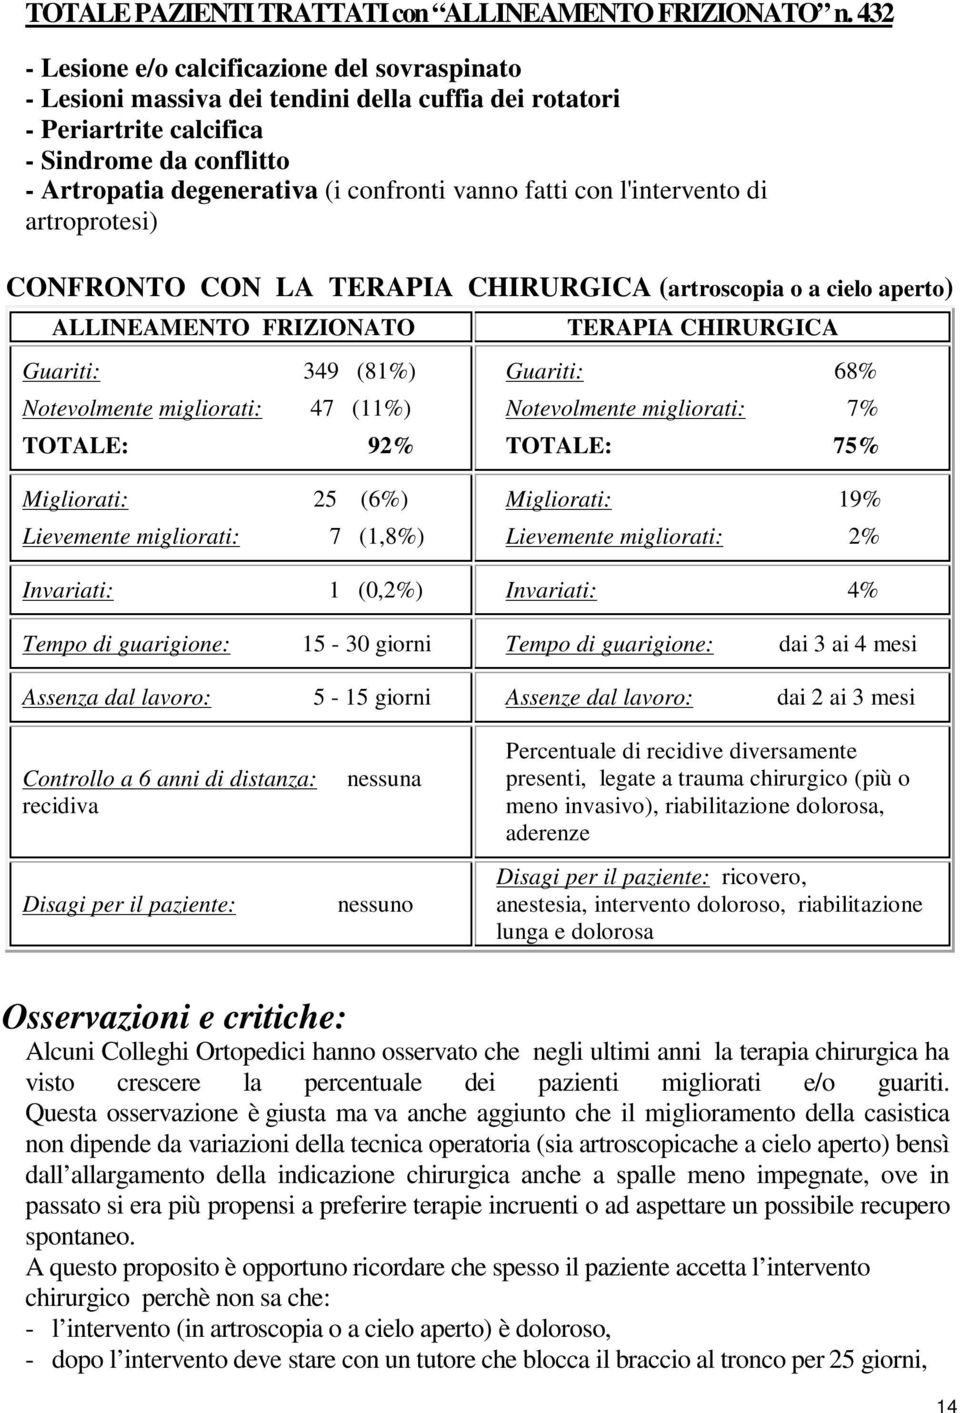 fatti con l'intervento di artroprotesi) CONFRONTO CON LA TERAPIA CHIRURGICA (artroscopia o a cielo aperto) ALLINEAMENTO FRIZIONATO Guariti:... 349...(81%) Notevolmente migliorati:.. 47.